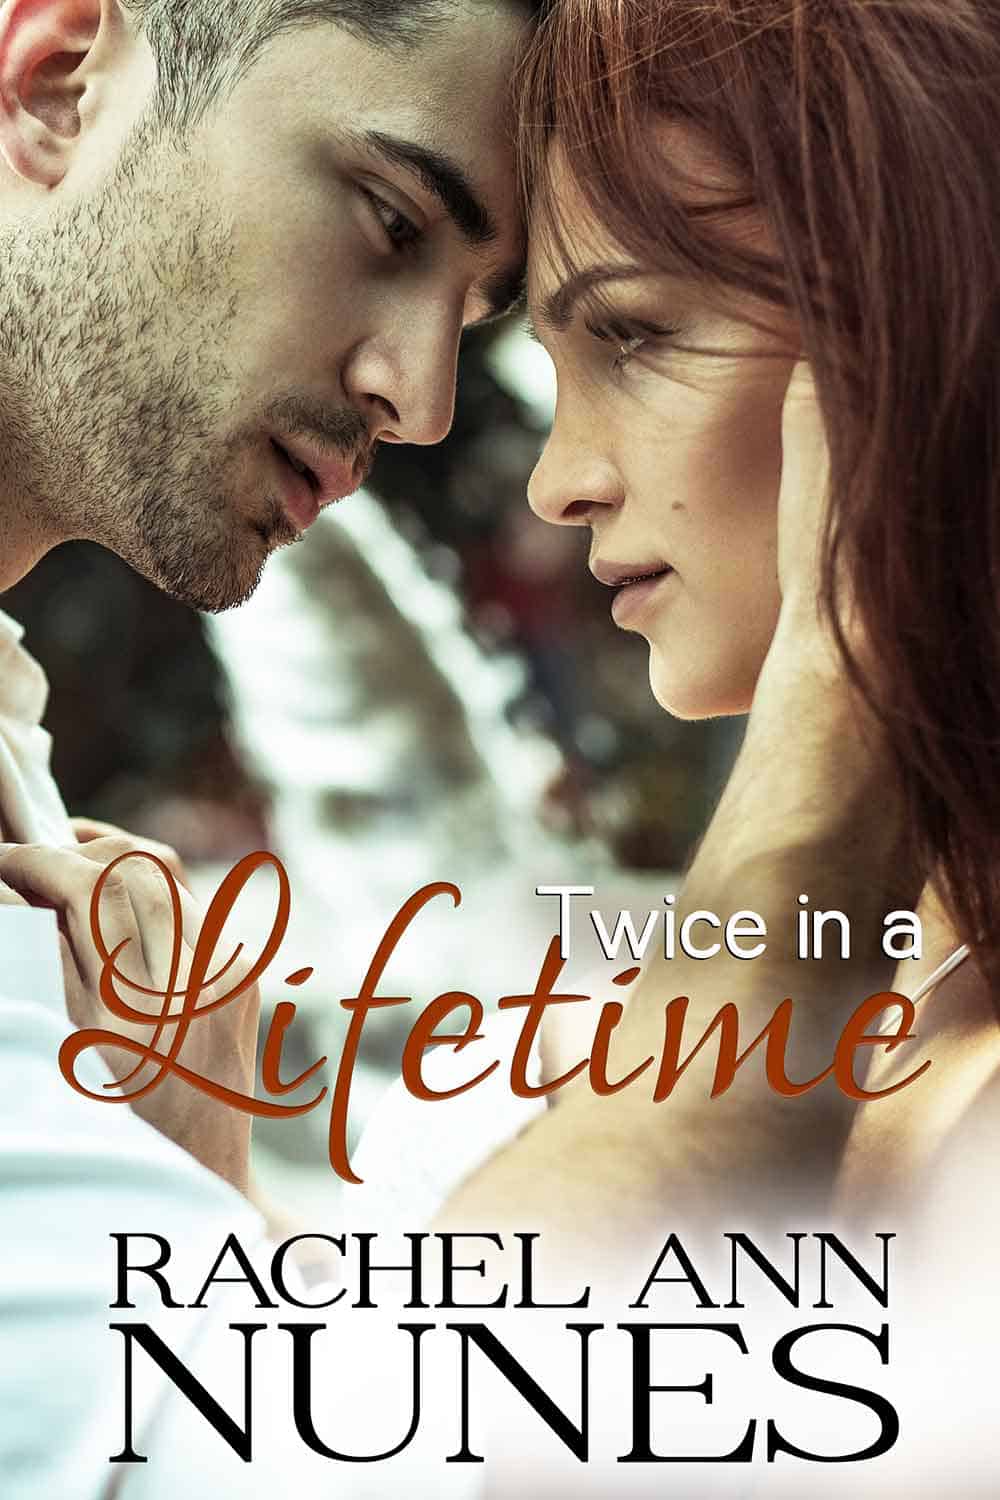 Twice in a Lifetime by Rachel Ann Nunes